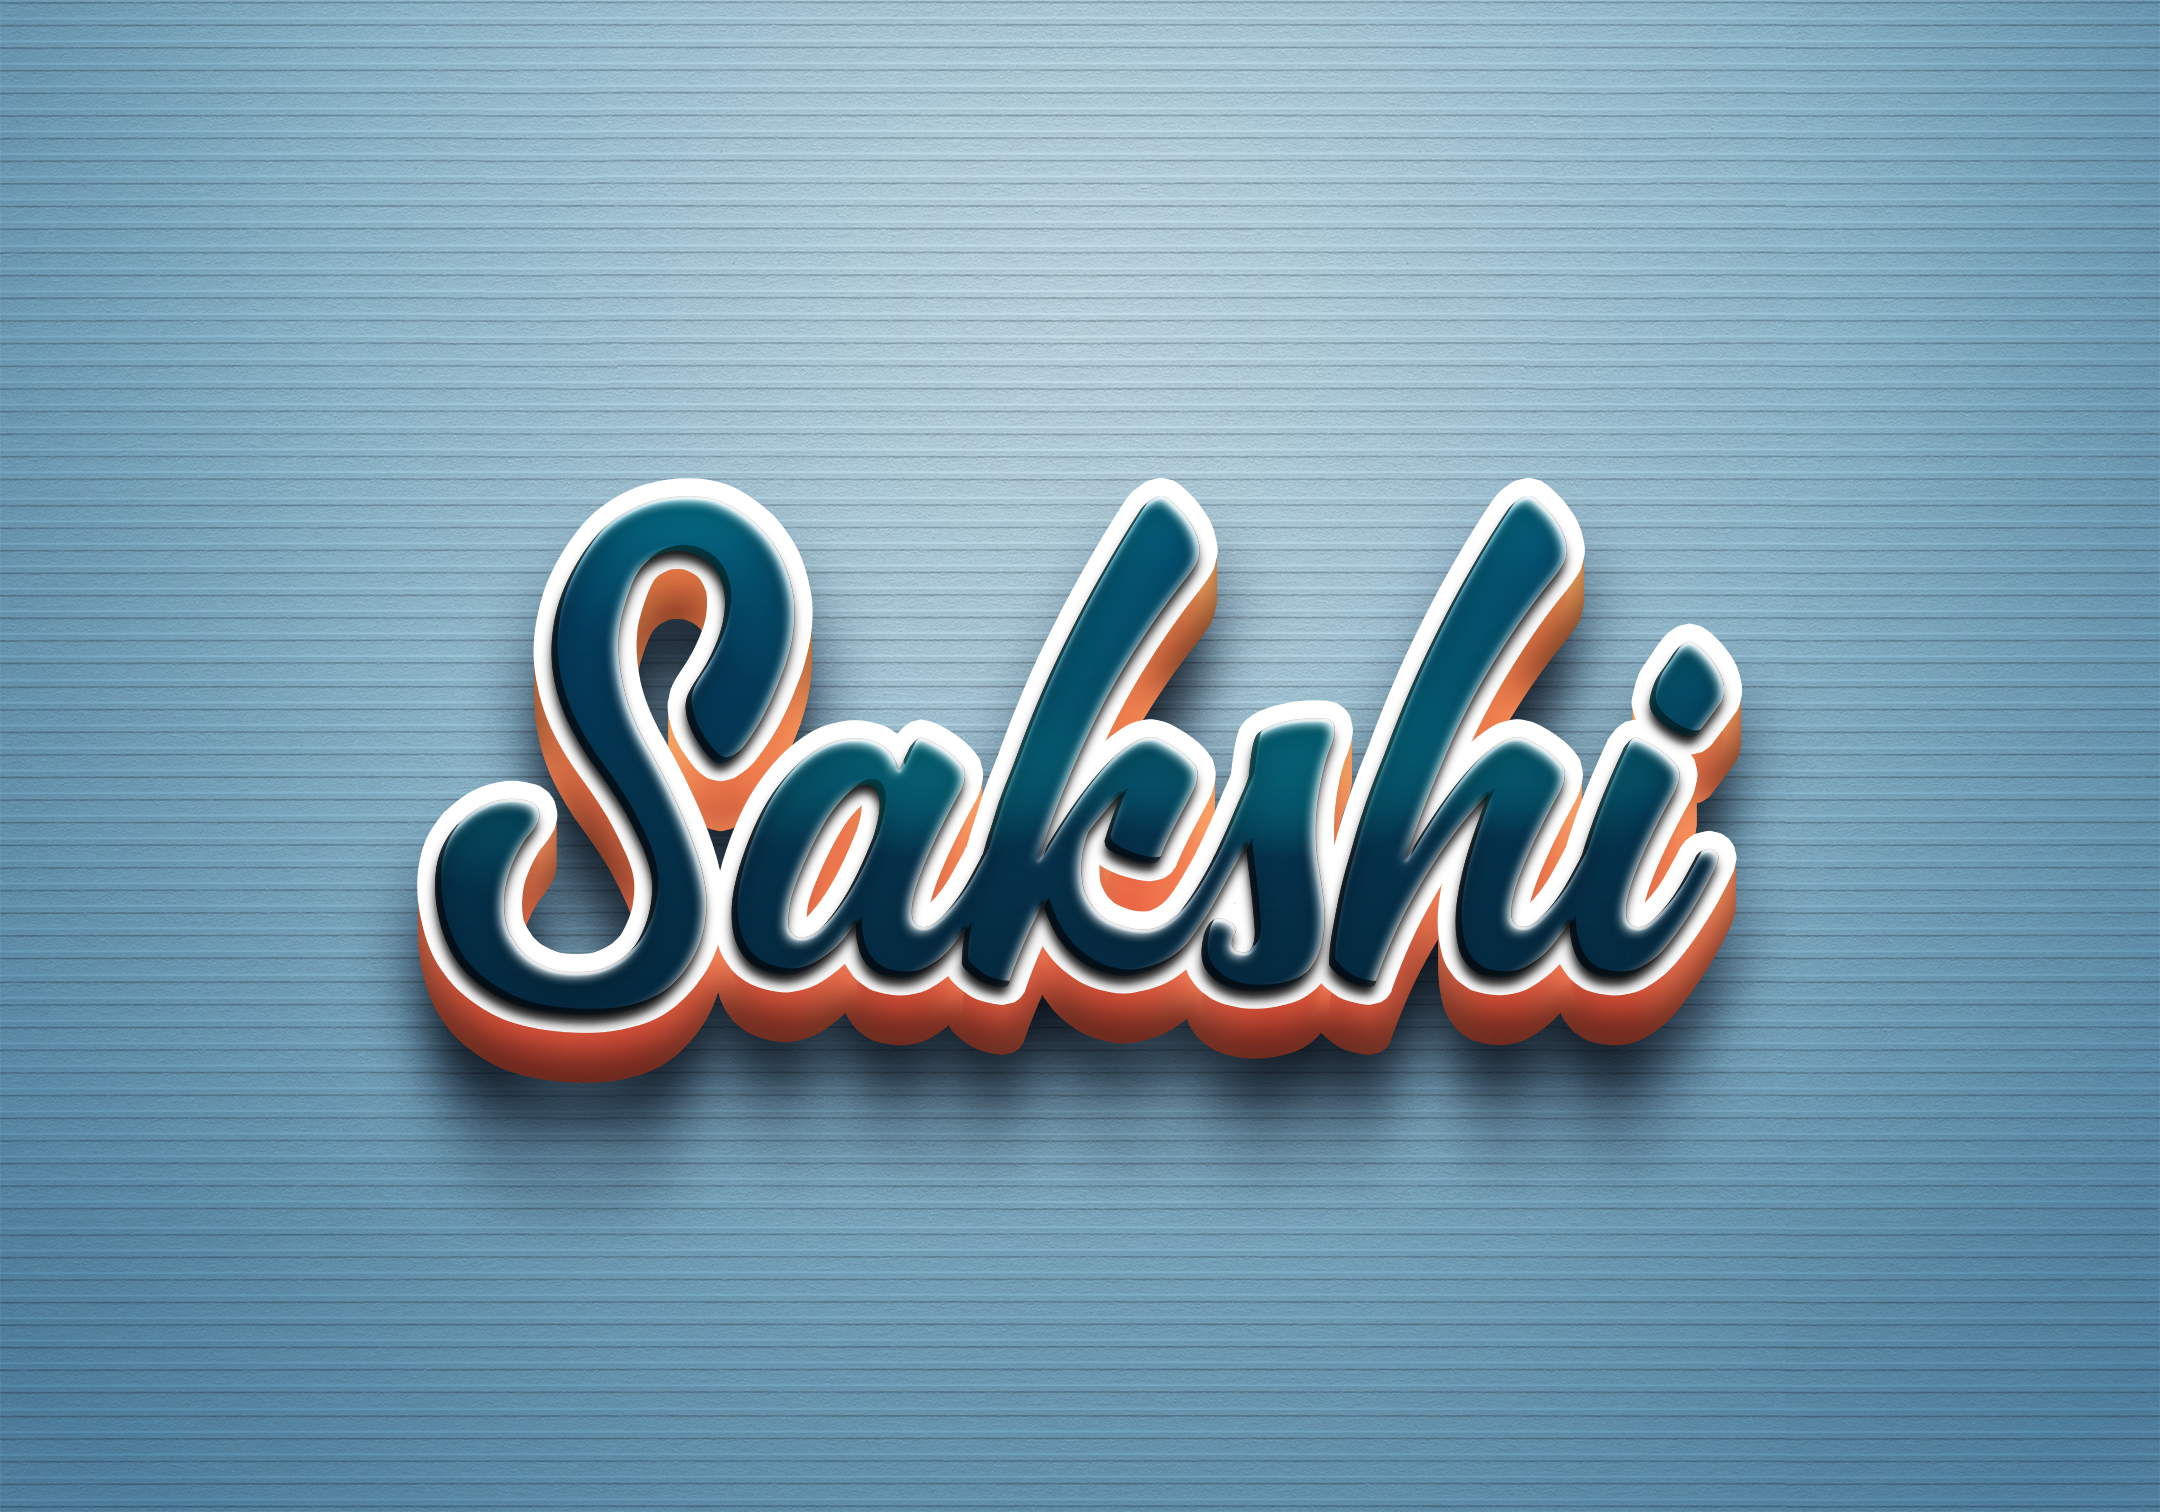 Sakshi Saini - #logo